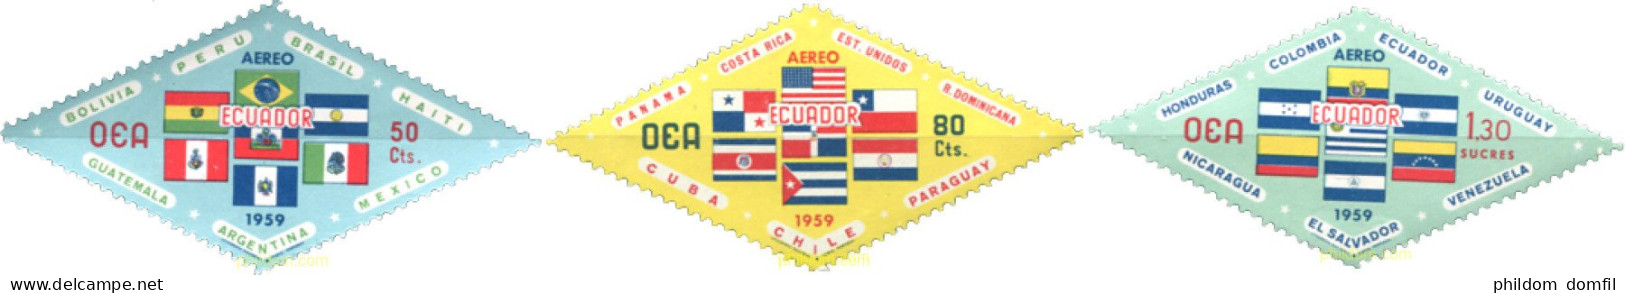 309157 MNH ECUADOR 1959 BANDERAS - Ecuador